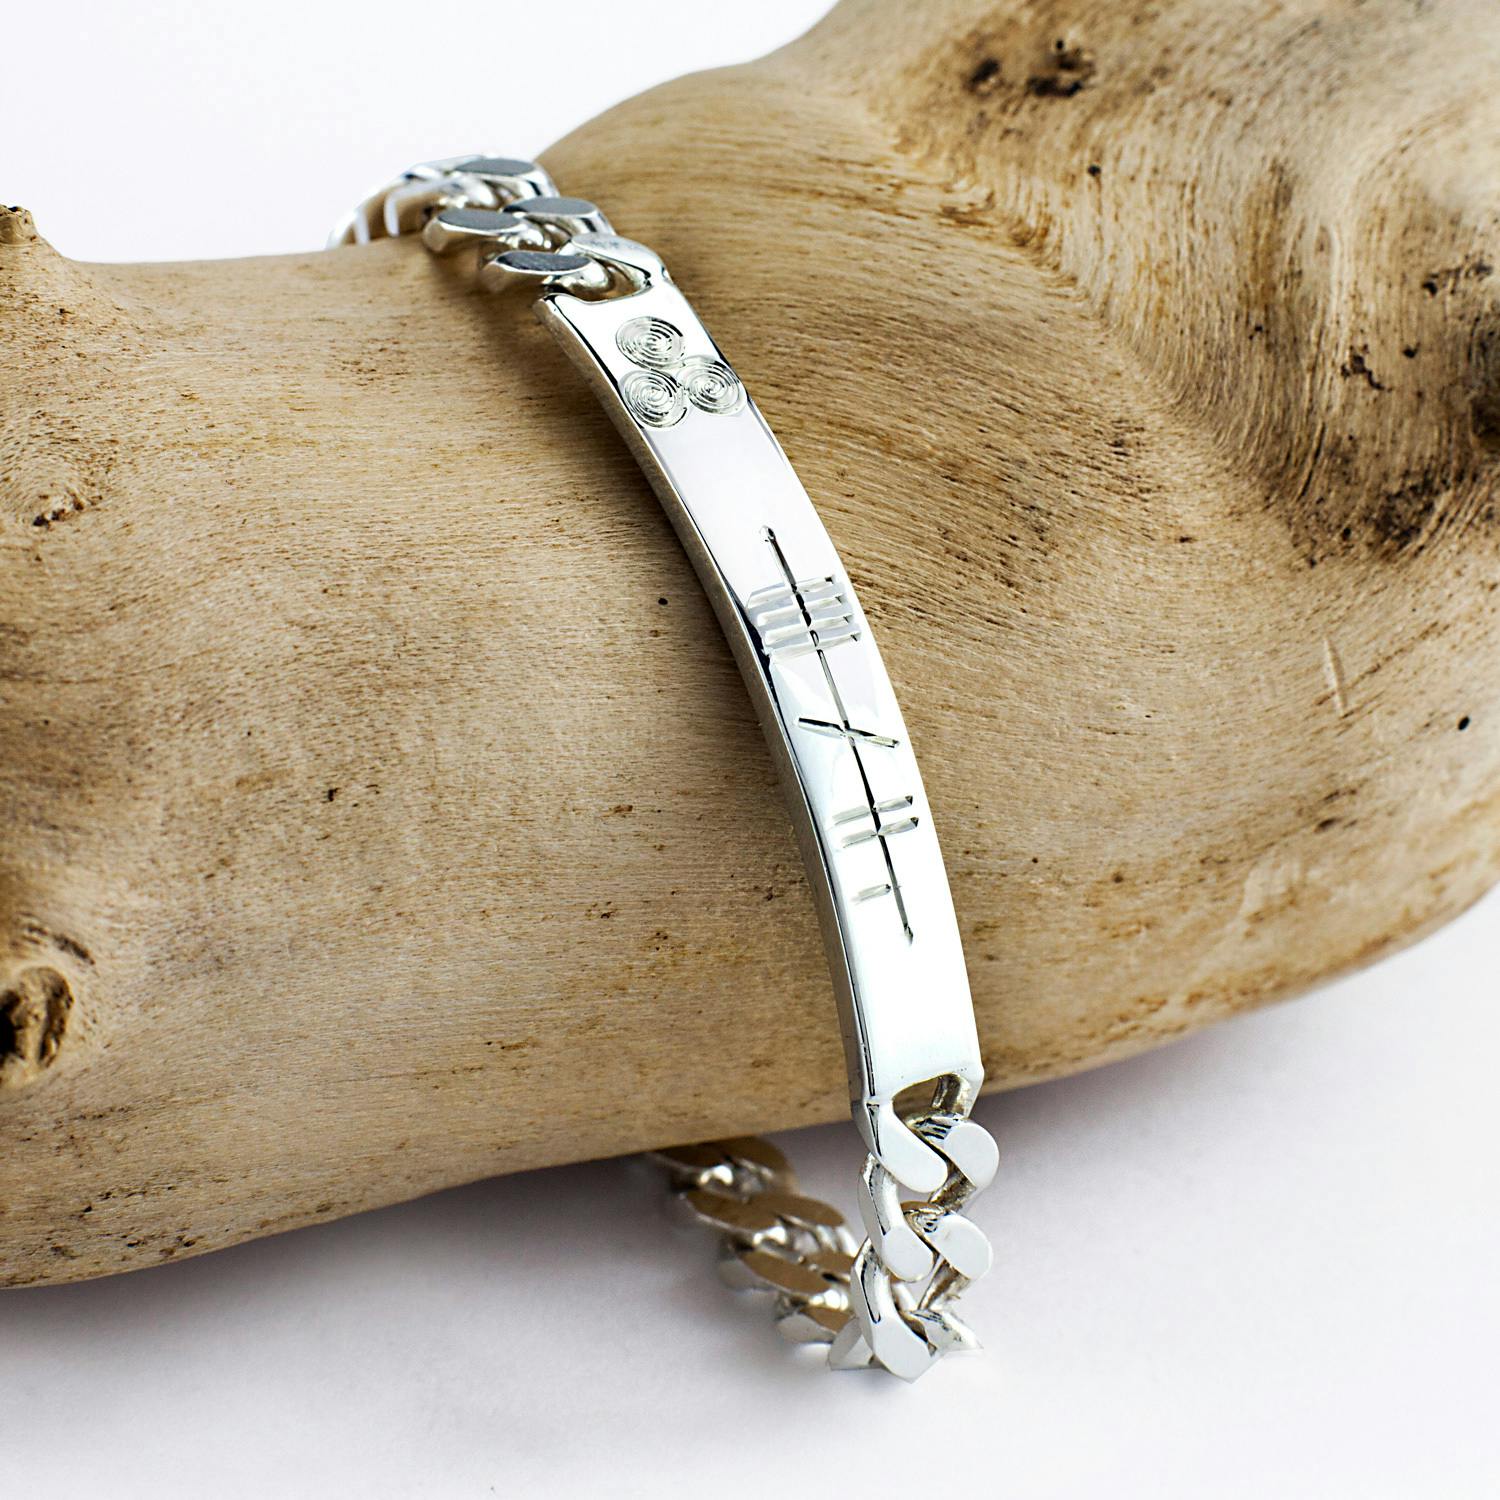 Unique Sterling Silver Bracelets